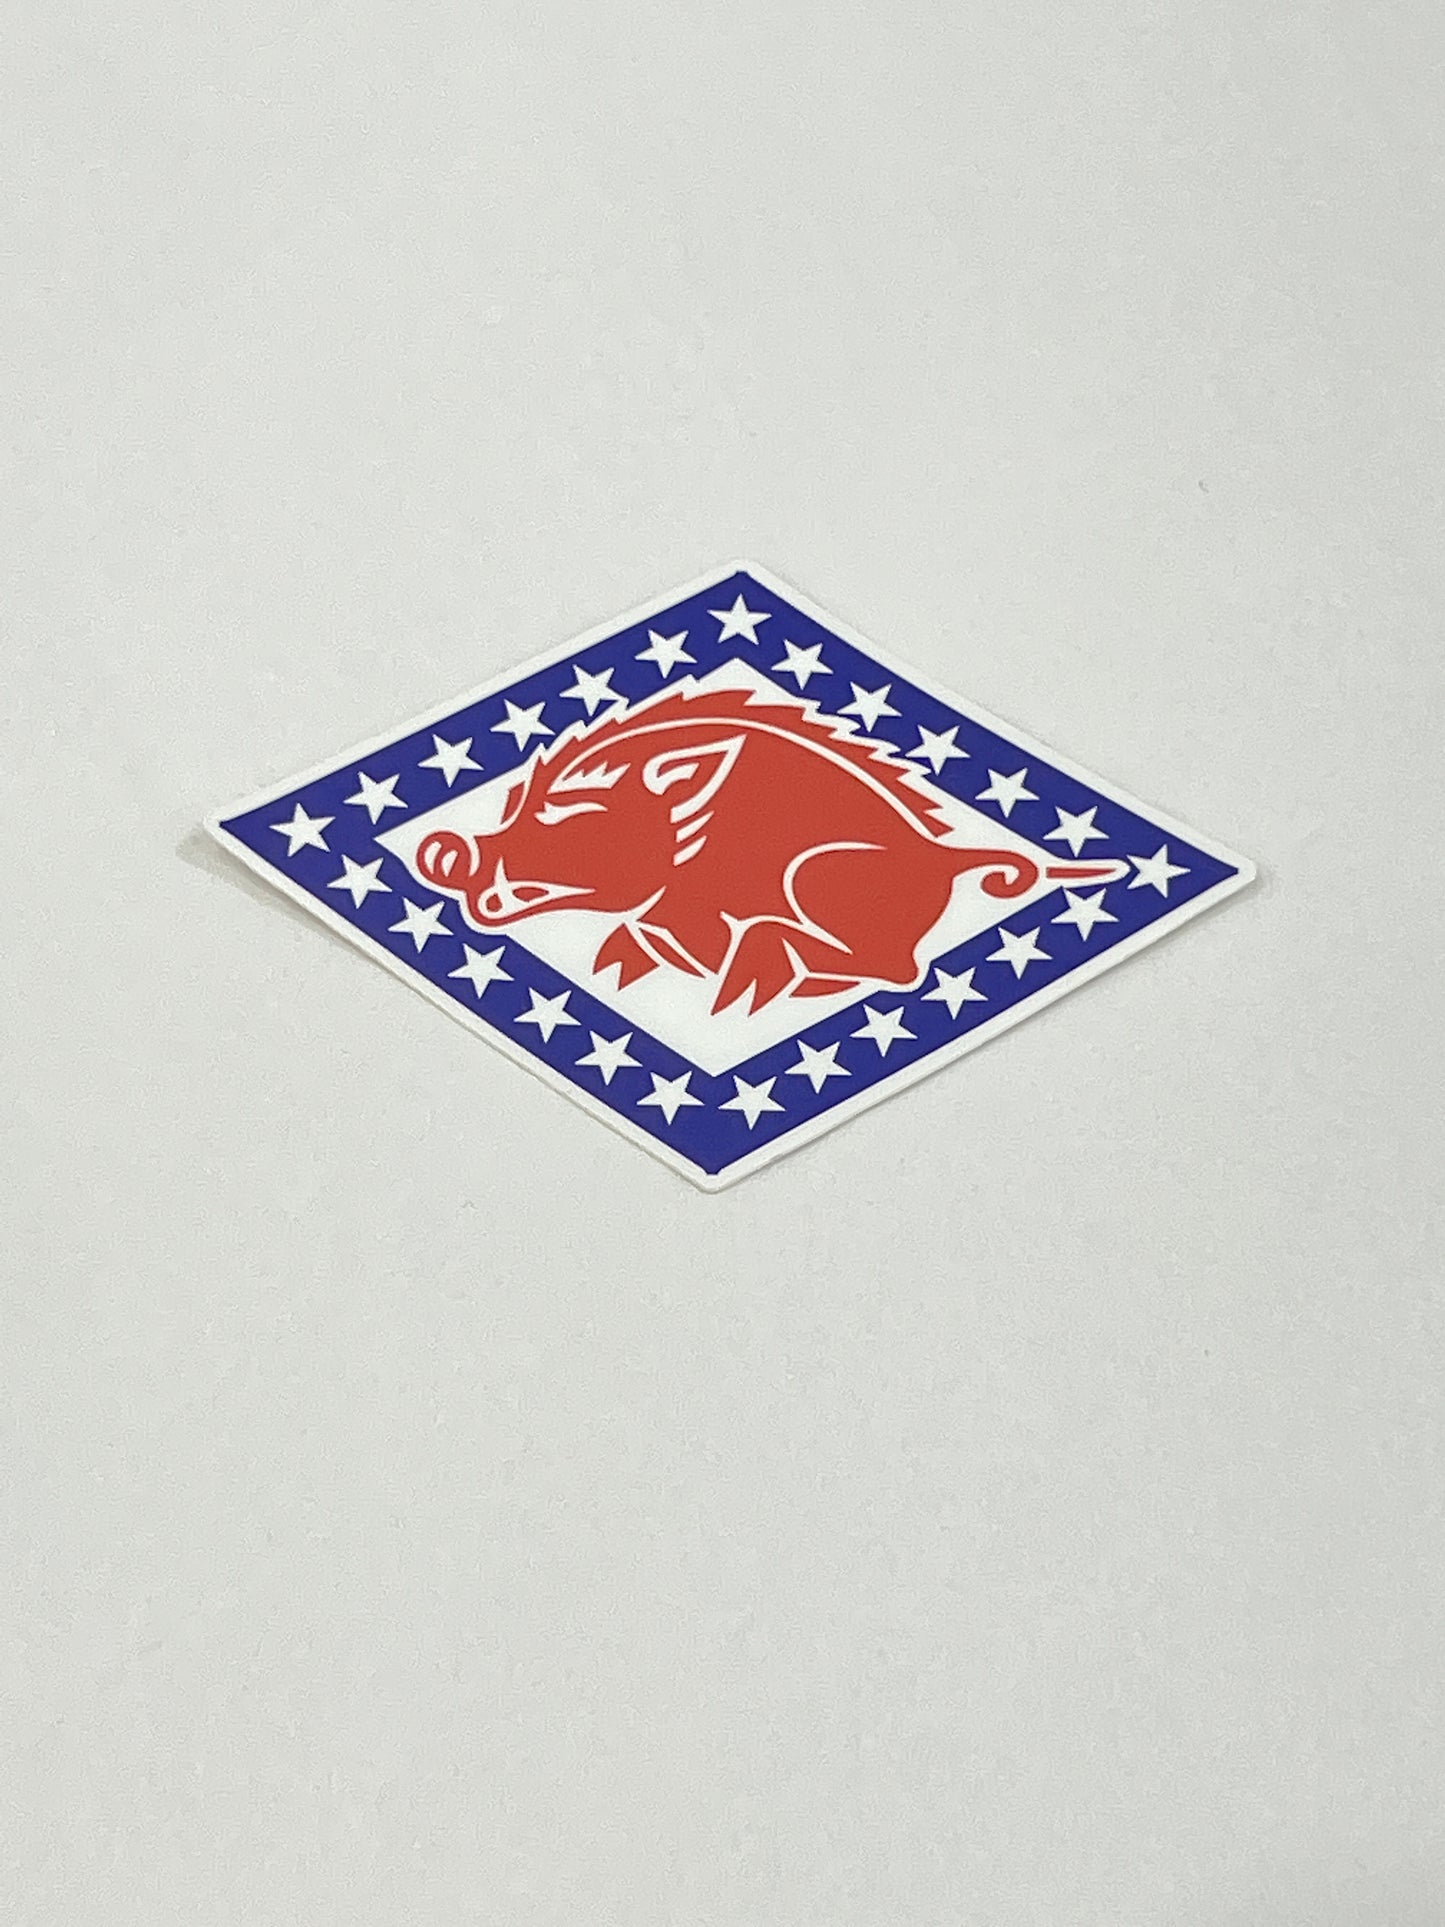 Arkansas Stickers